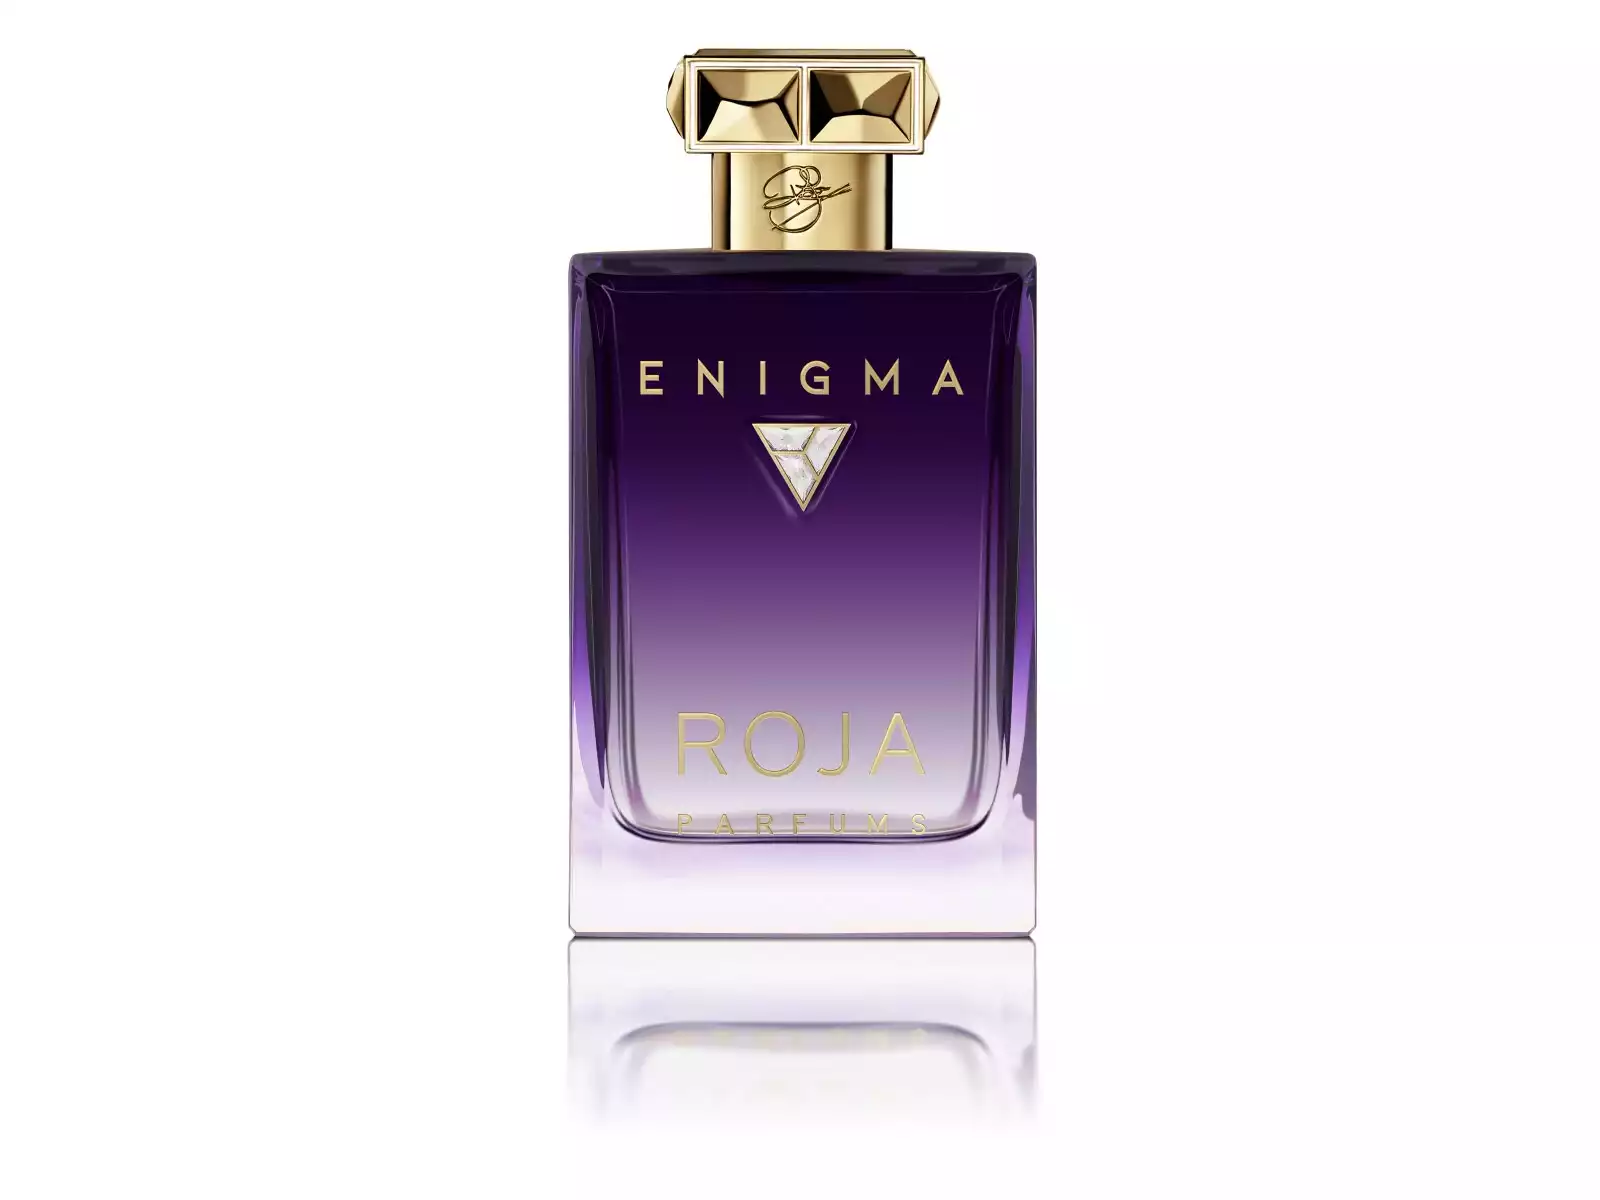 Enigma - Roja Parfums (Essence de Parfum Pour Femme)